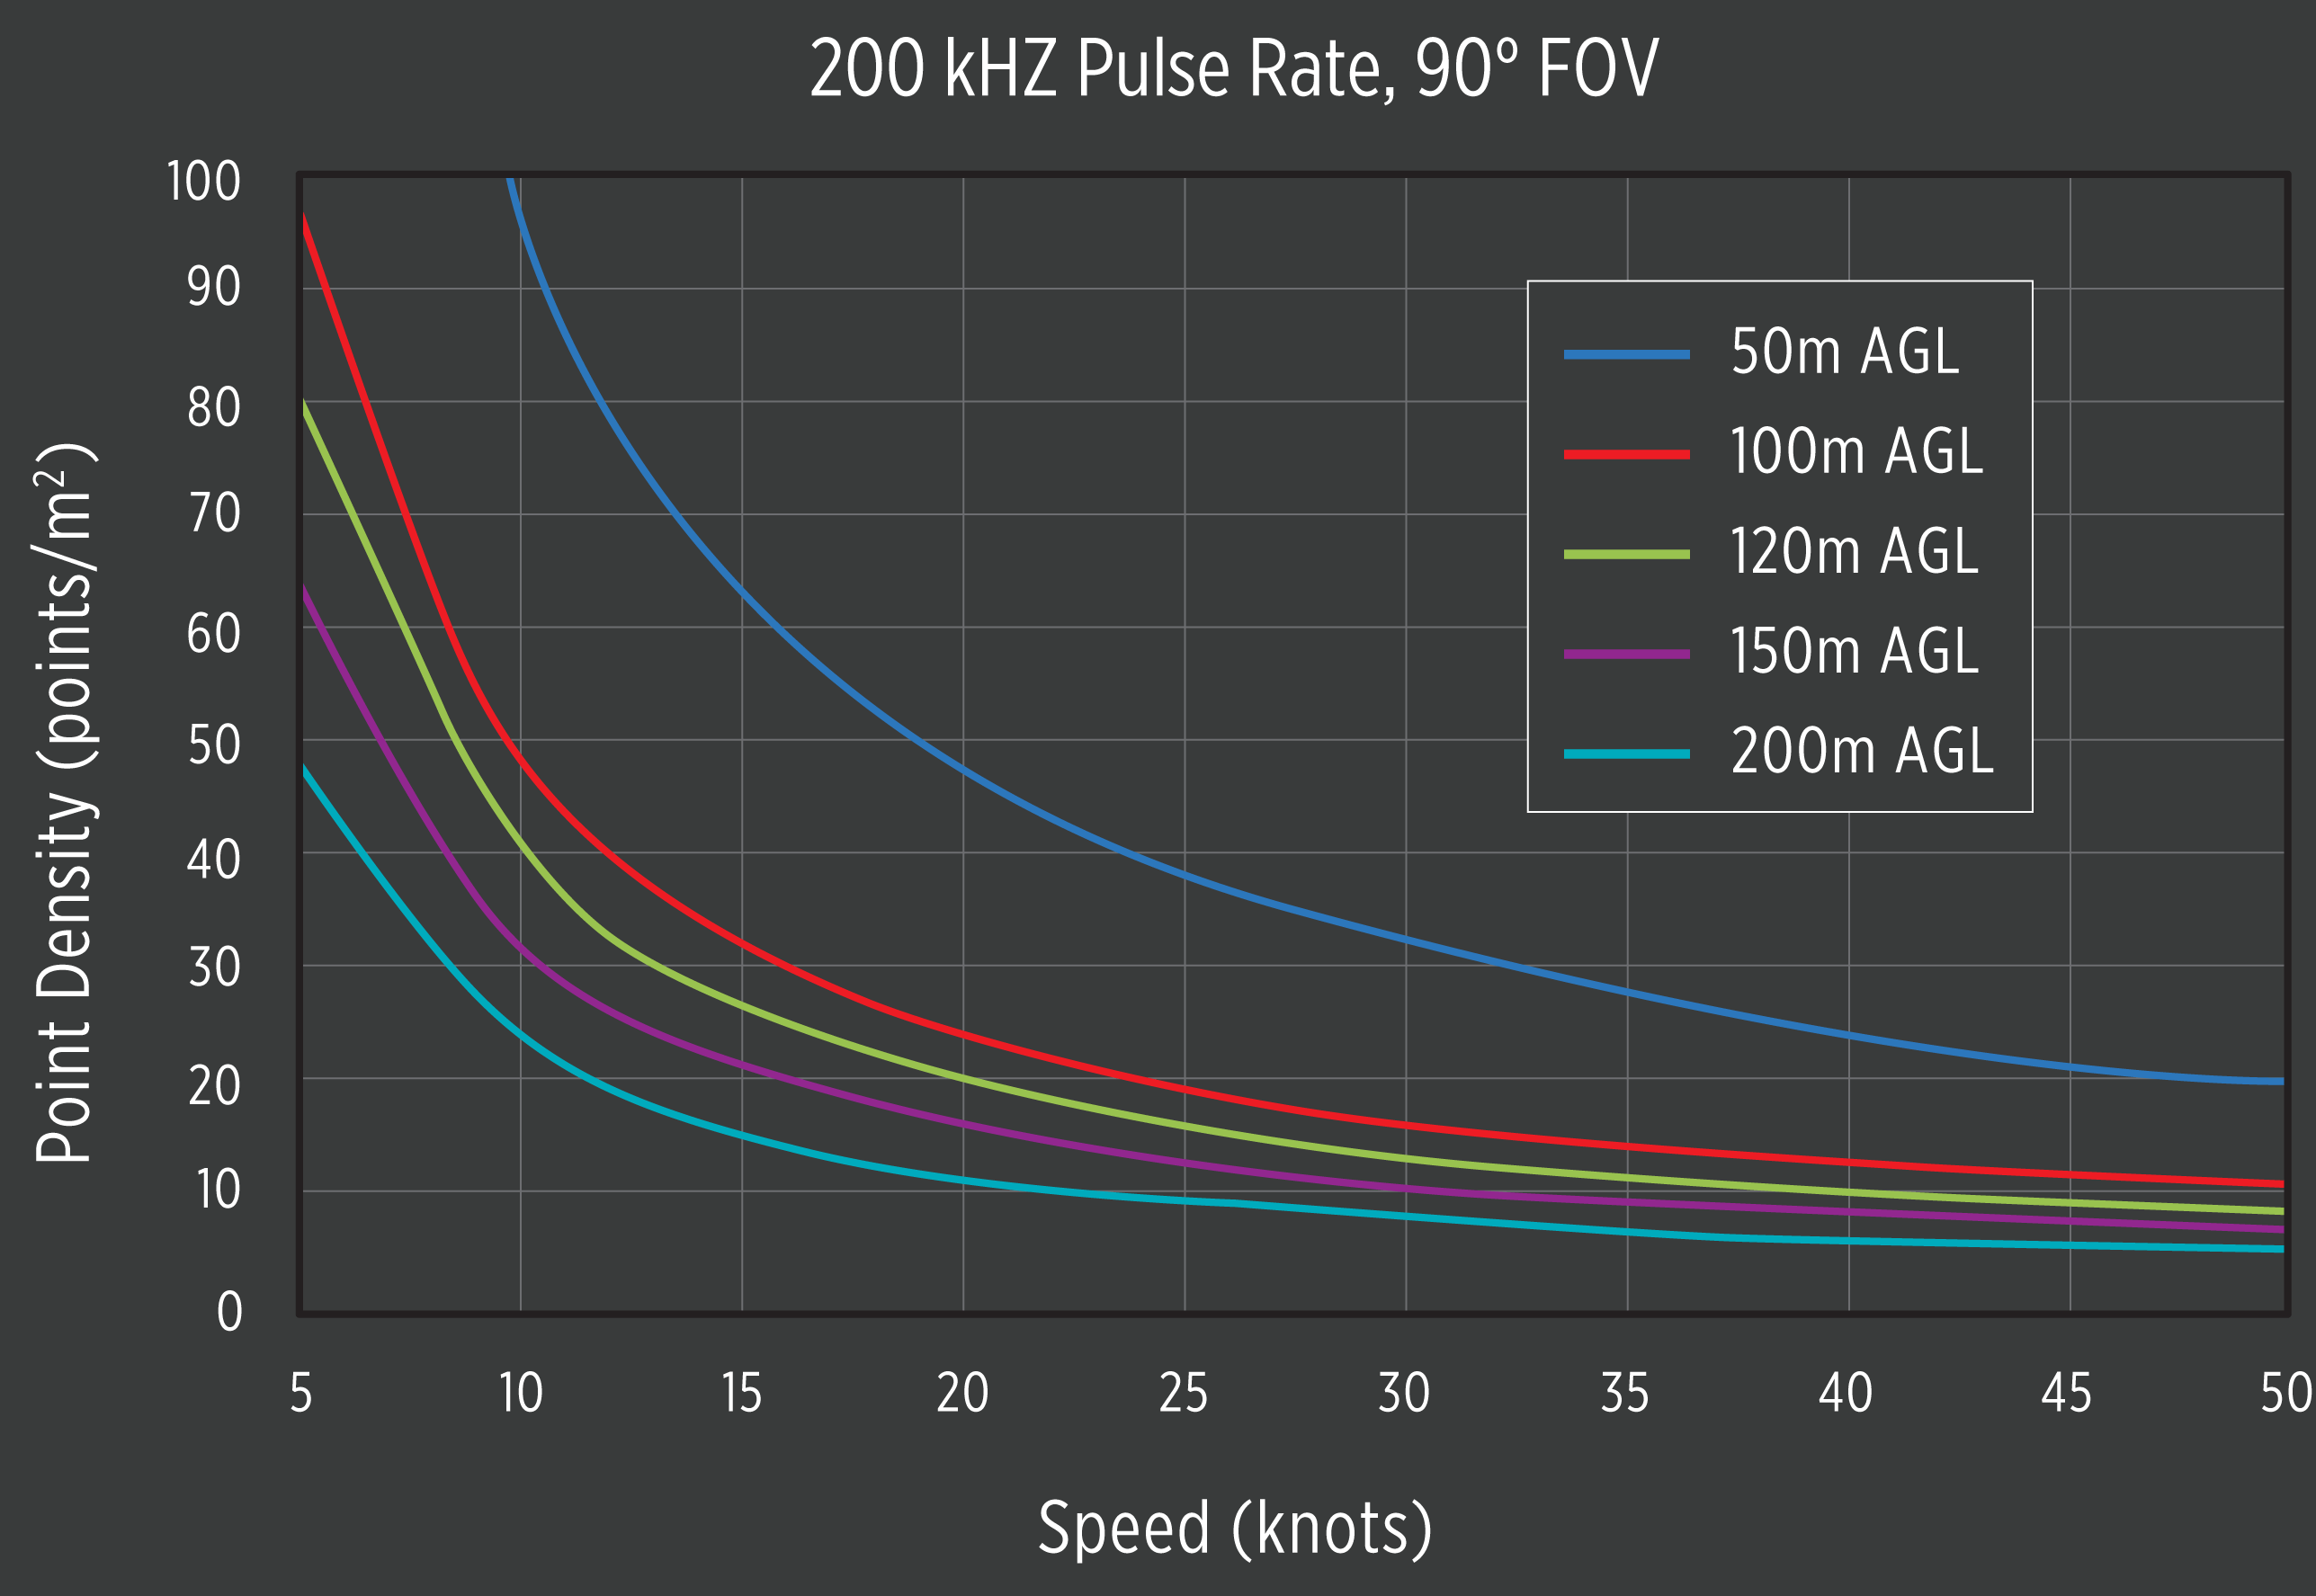 P-360_200kHZ_Speed-vs-Point-Density-Graph